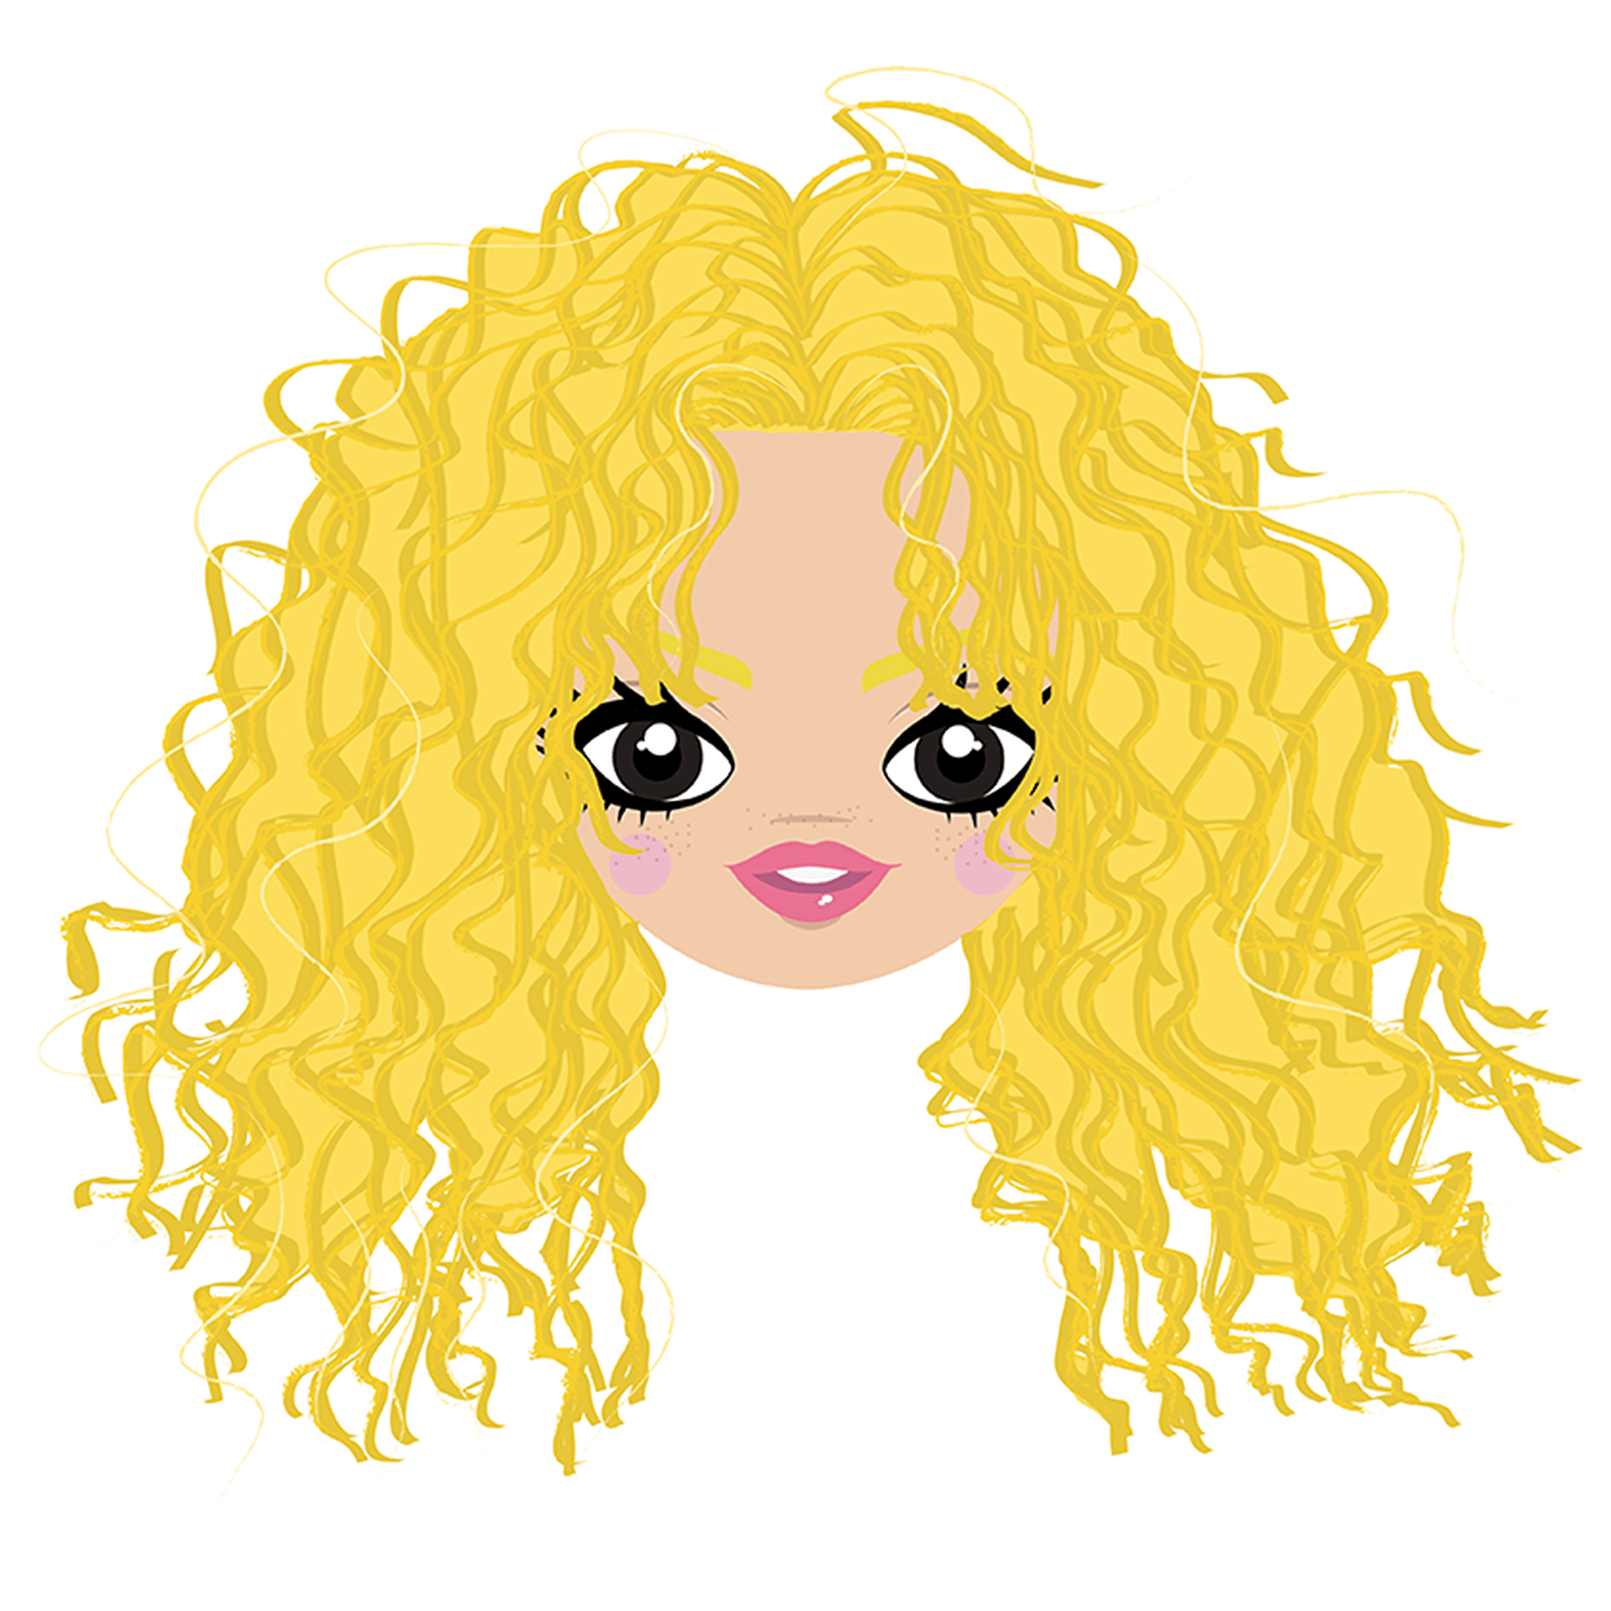 Comic illustration of singer Shakira. // Digital //